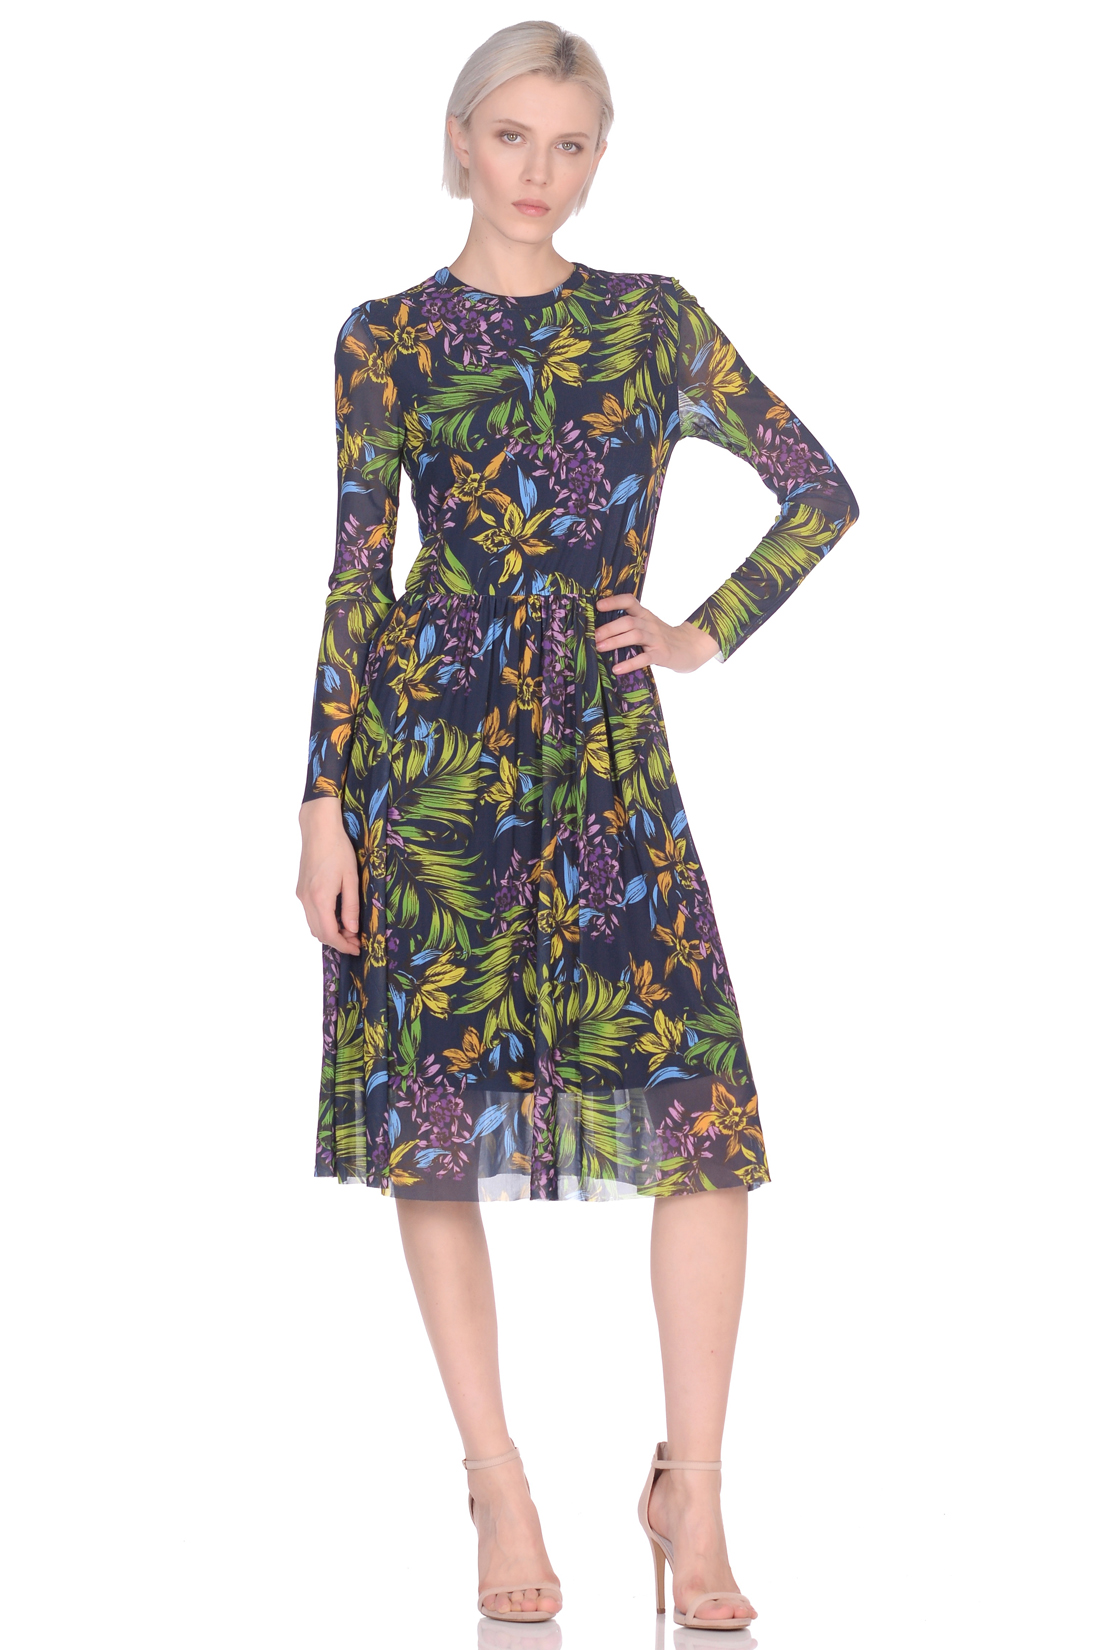 Платье из трикотажной сетки (арт. baon B459100), размер XS, цвет dark navy printed#синий Платье из трикотажной сетки (арт. baon B459100) - фото 5